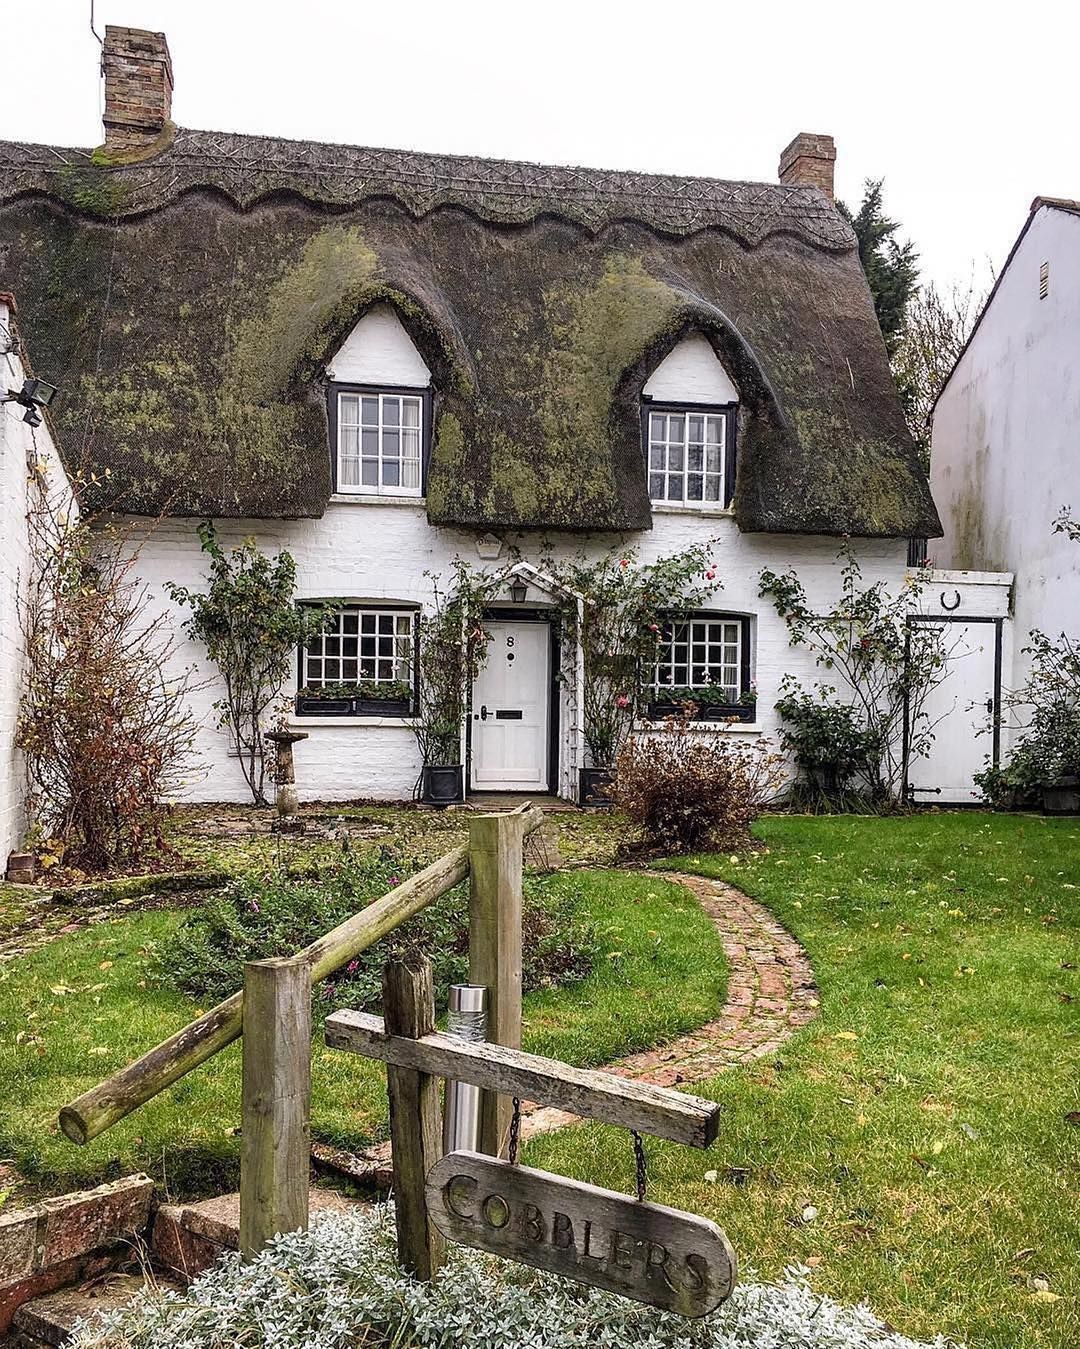 Landhaus Garten Blog Inspirierend Did You Know that Up until 1765 British Homes Only Had